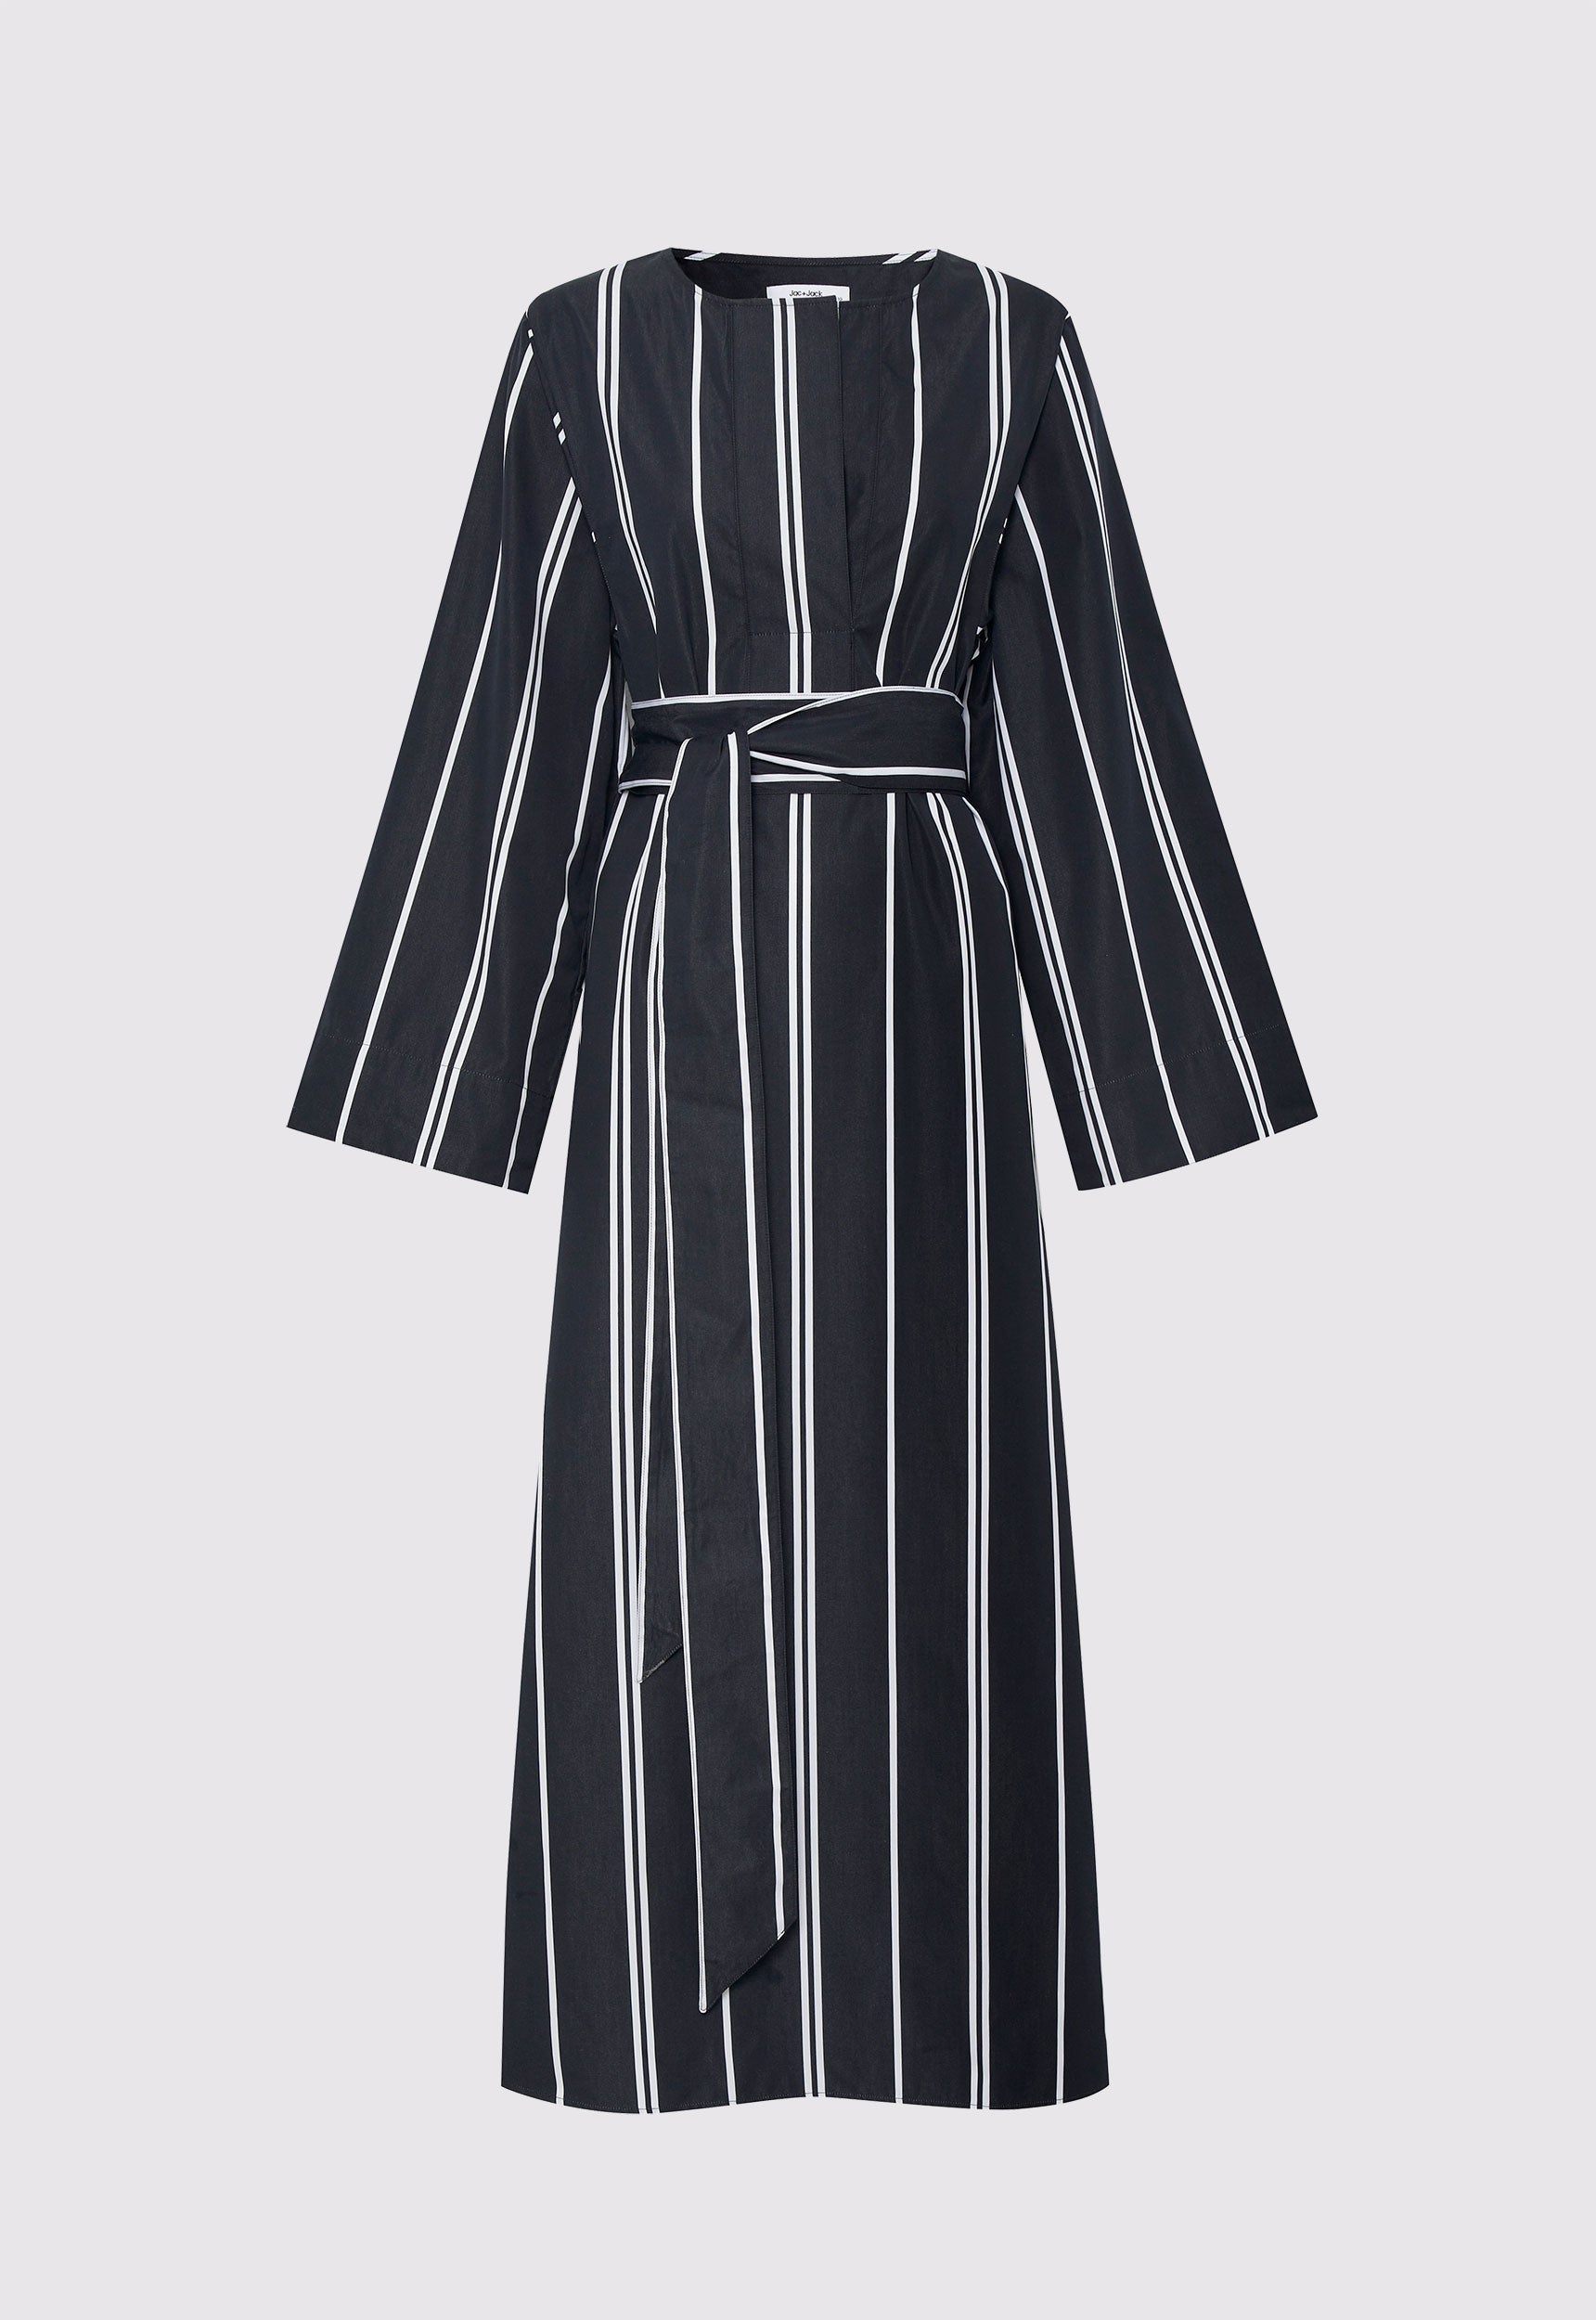 Granada Cotton Dress in Bold Stripe Black